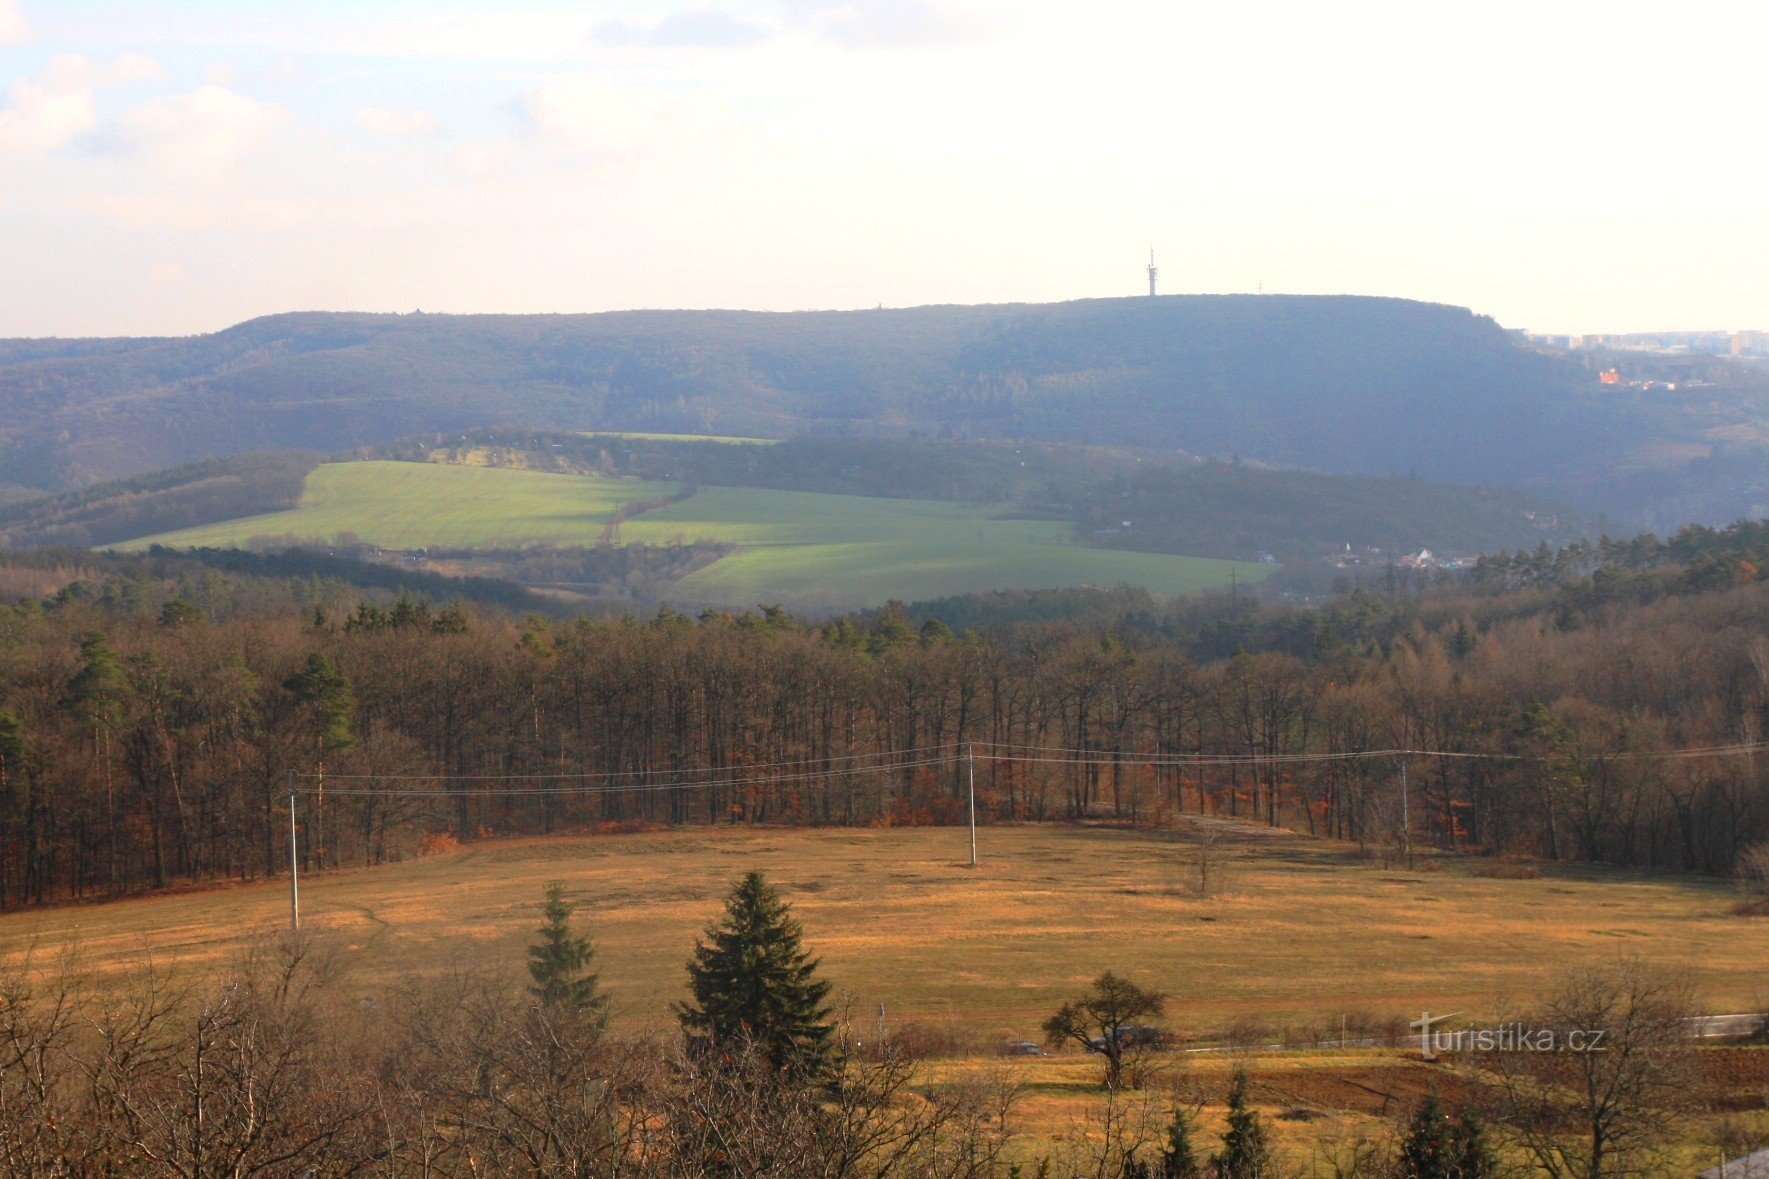 Hády karst plateau from the upper part of Bílovice nad Svitavou